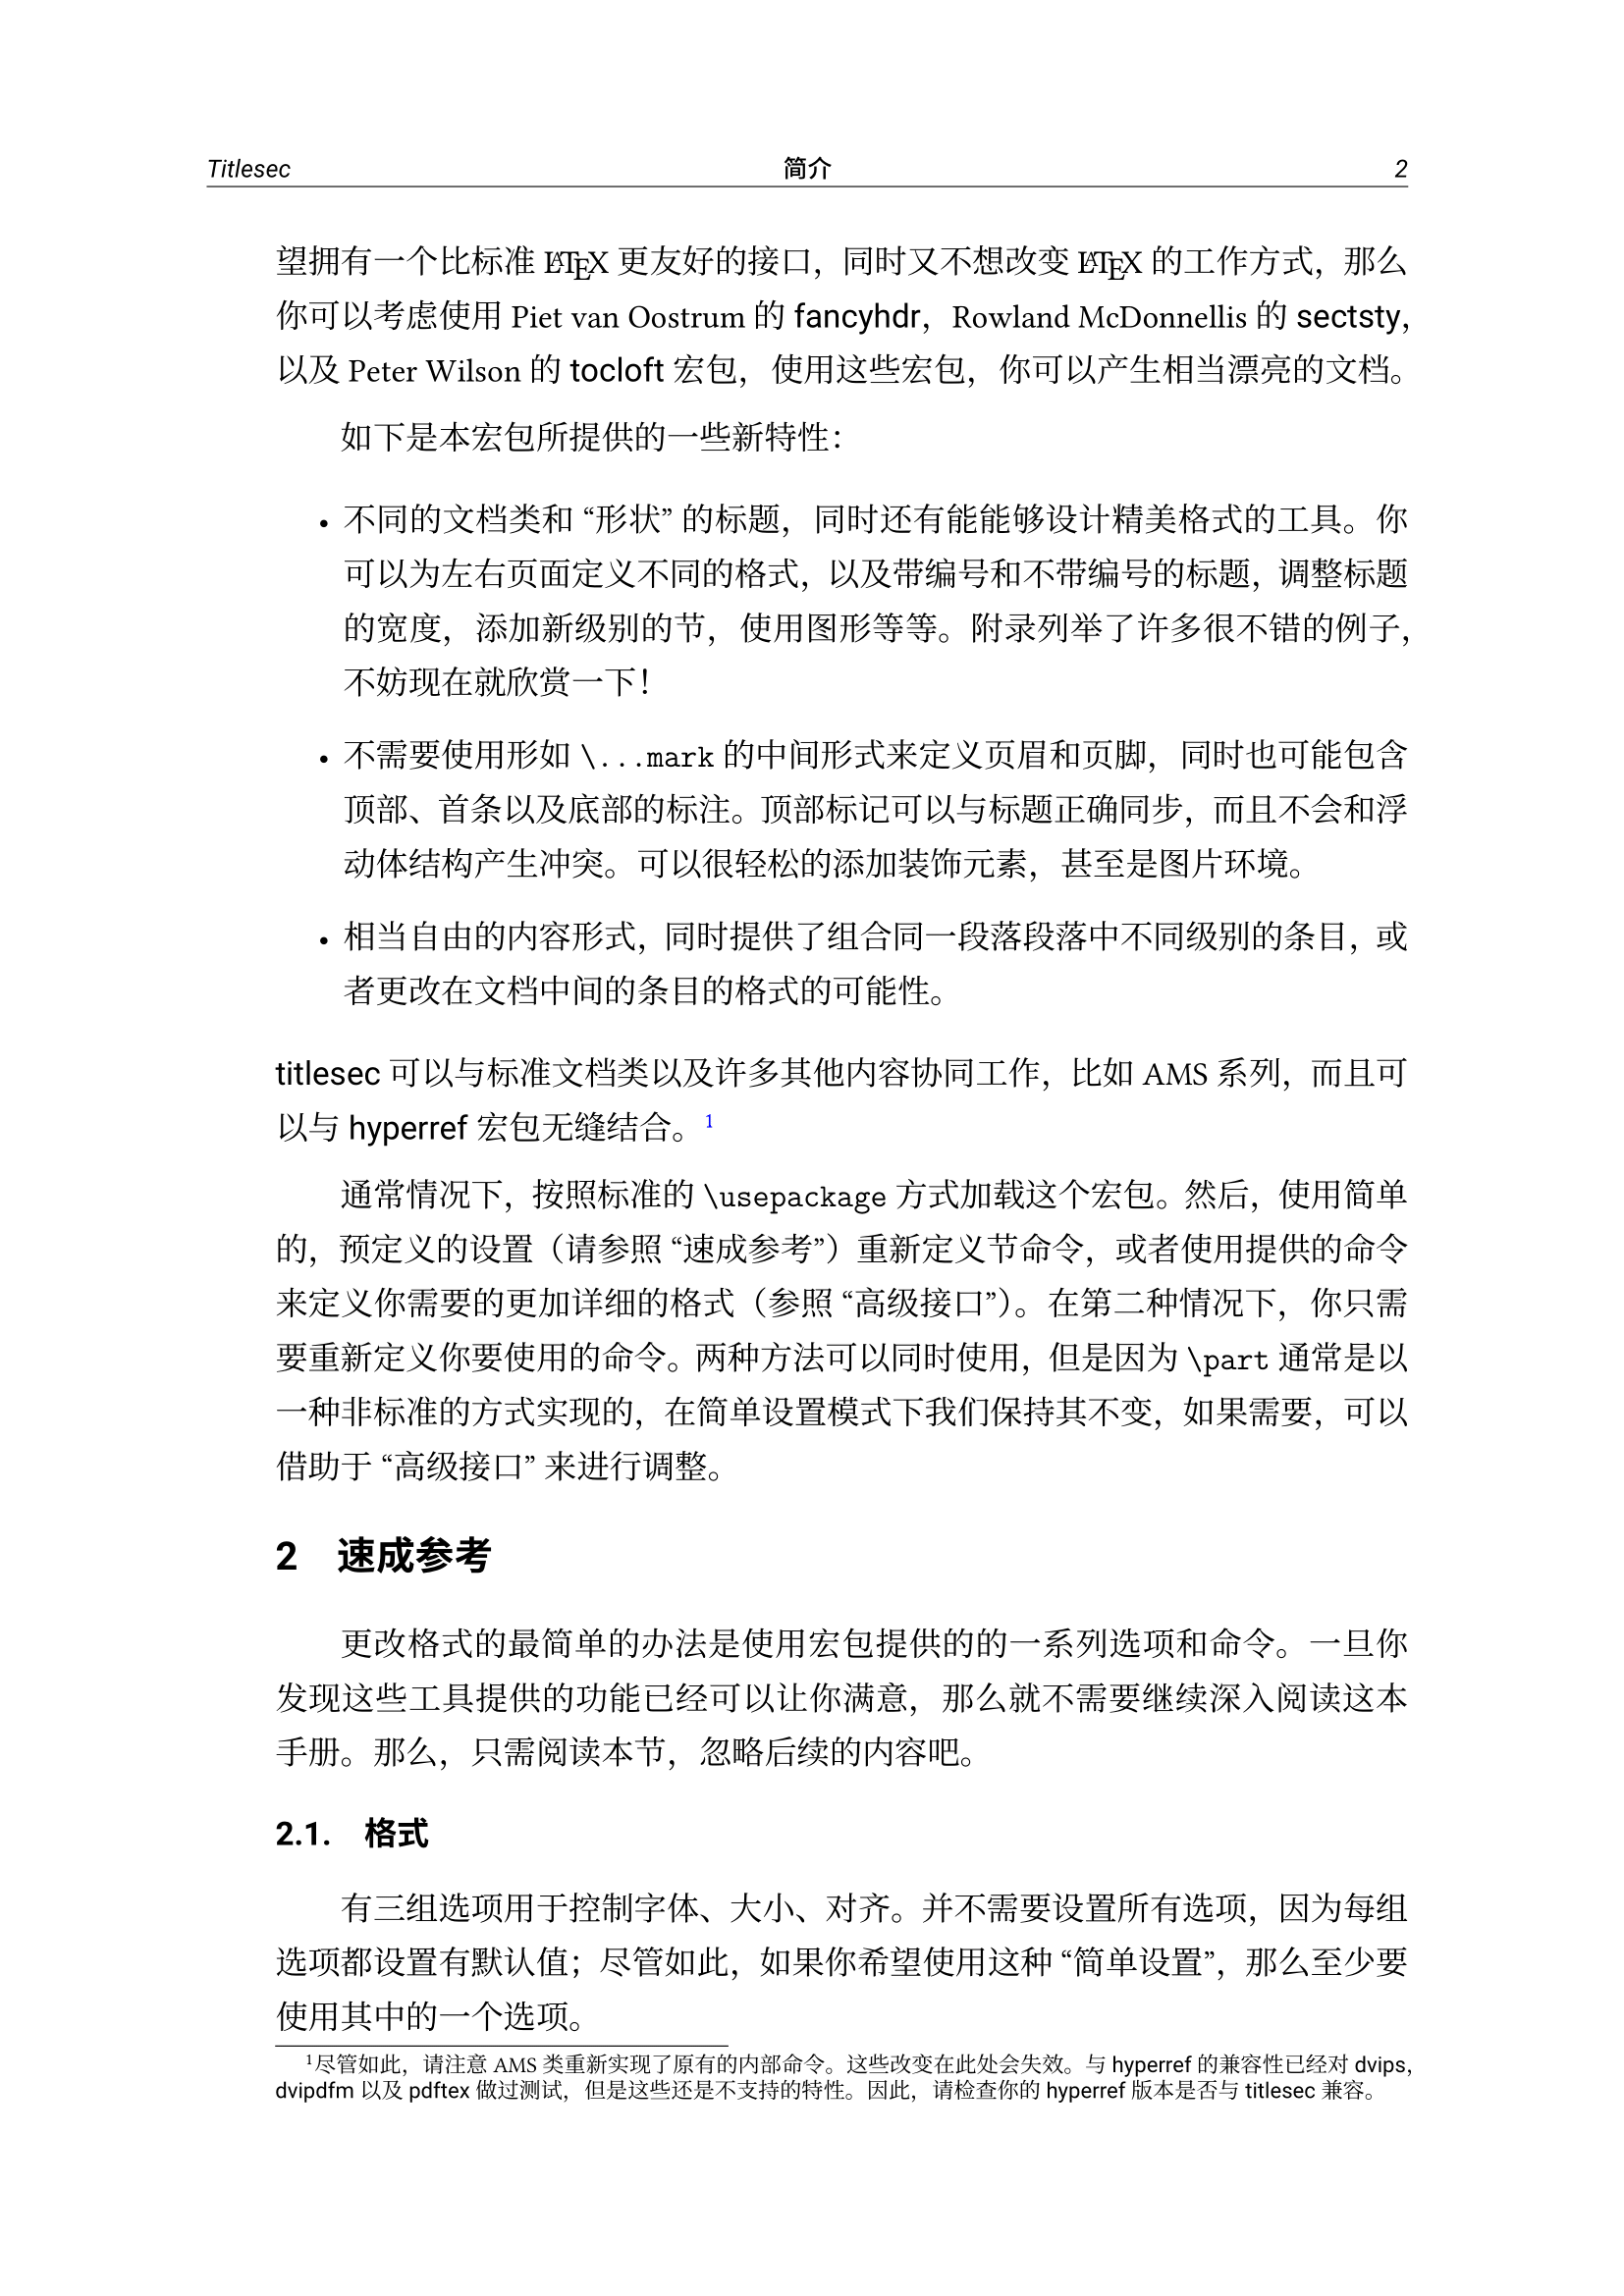 定制章节样式的万用包 - titlesec 中译本 高虎翻译